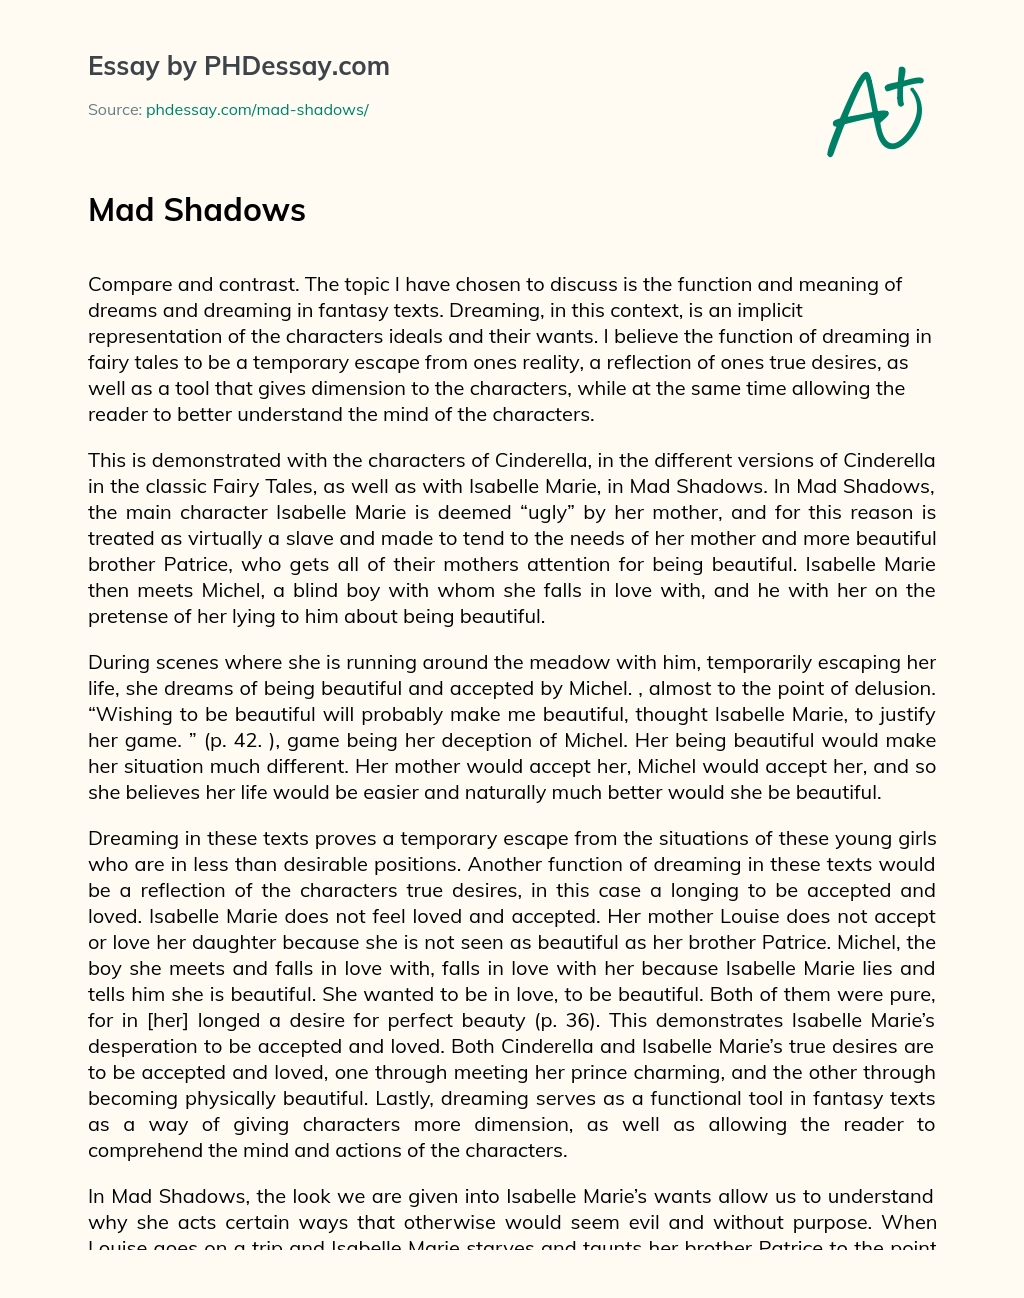 Mad Shadows, A Story in a Fantasy World essay